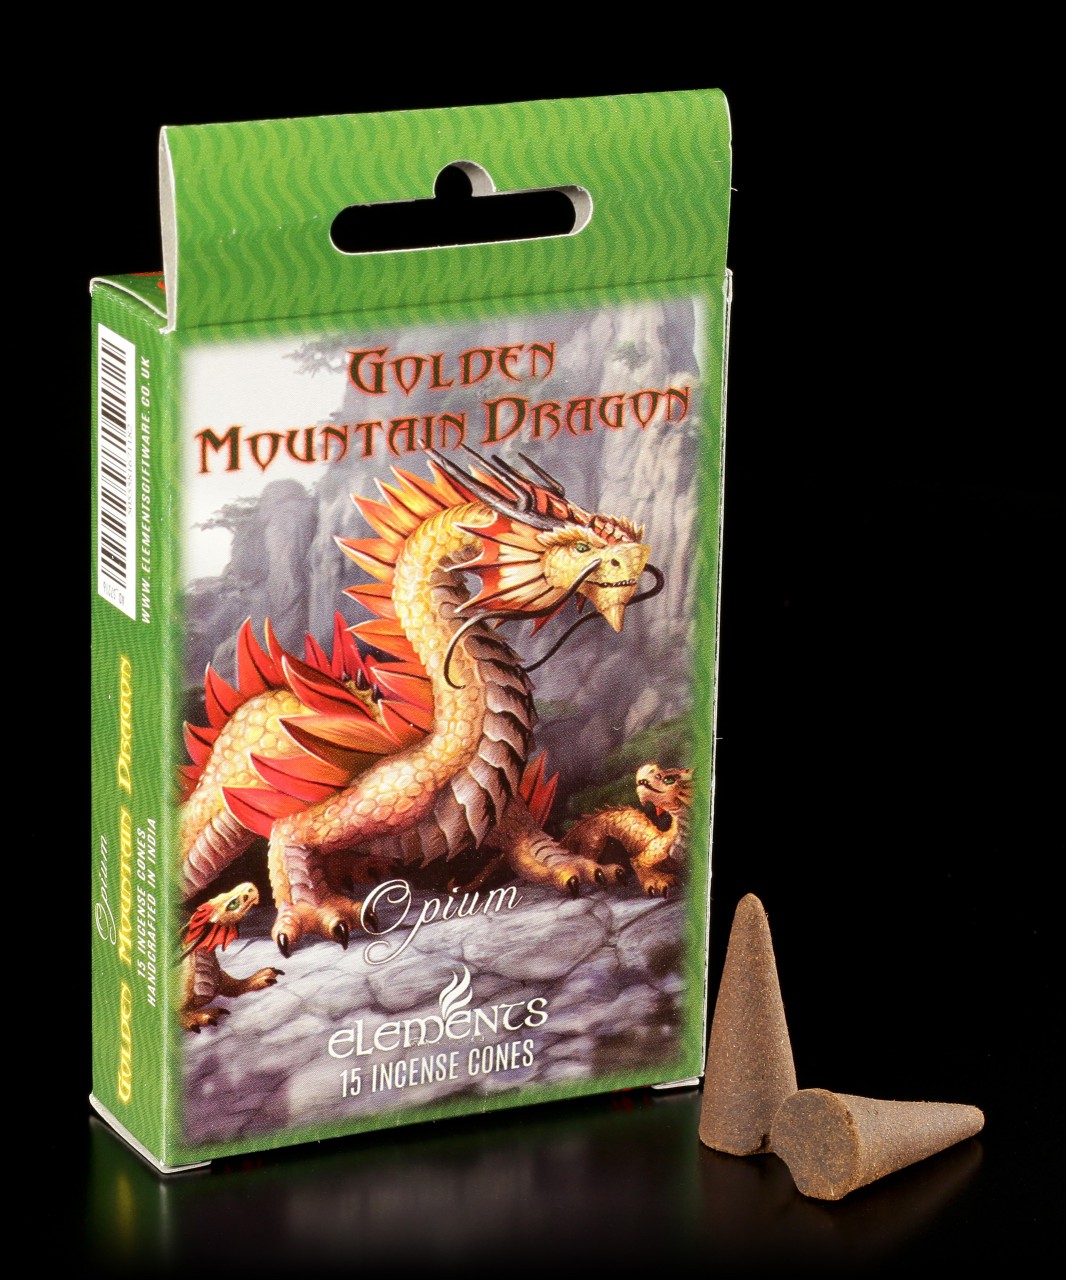 Incense Cones Opium - Golden Mountain Dragon